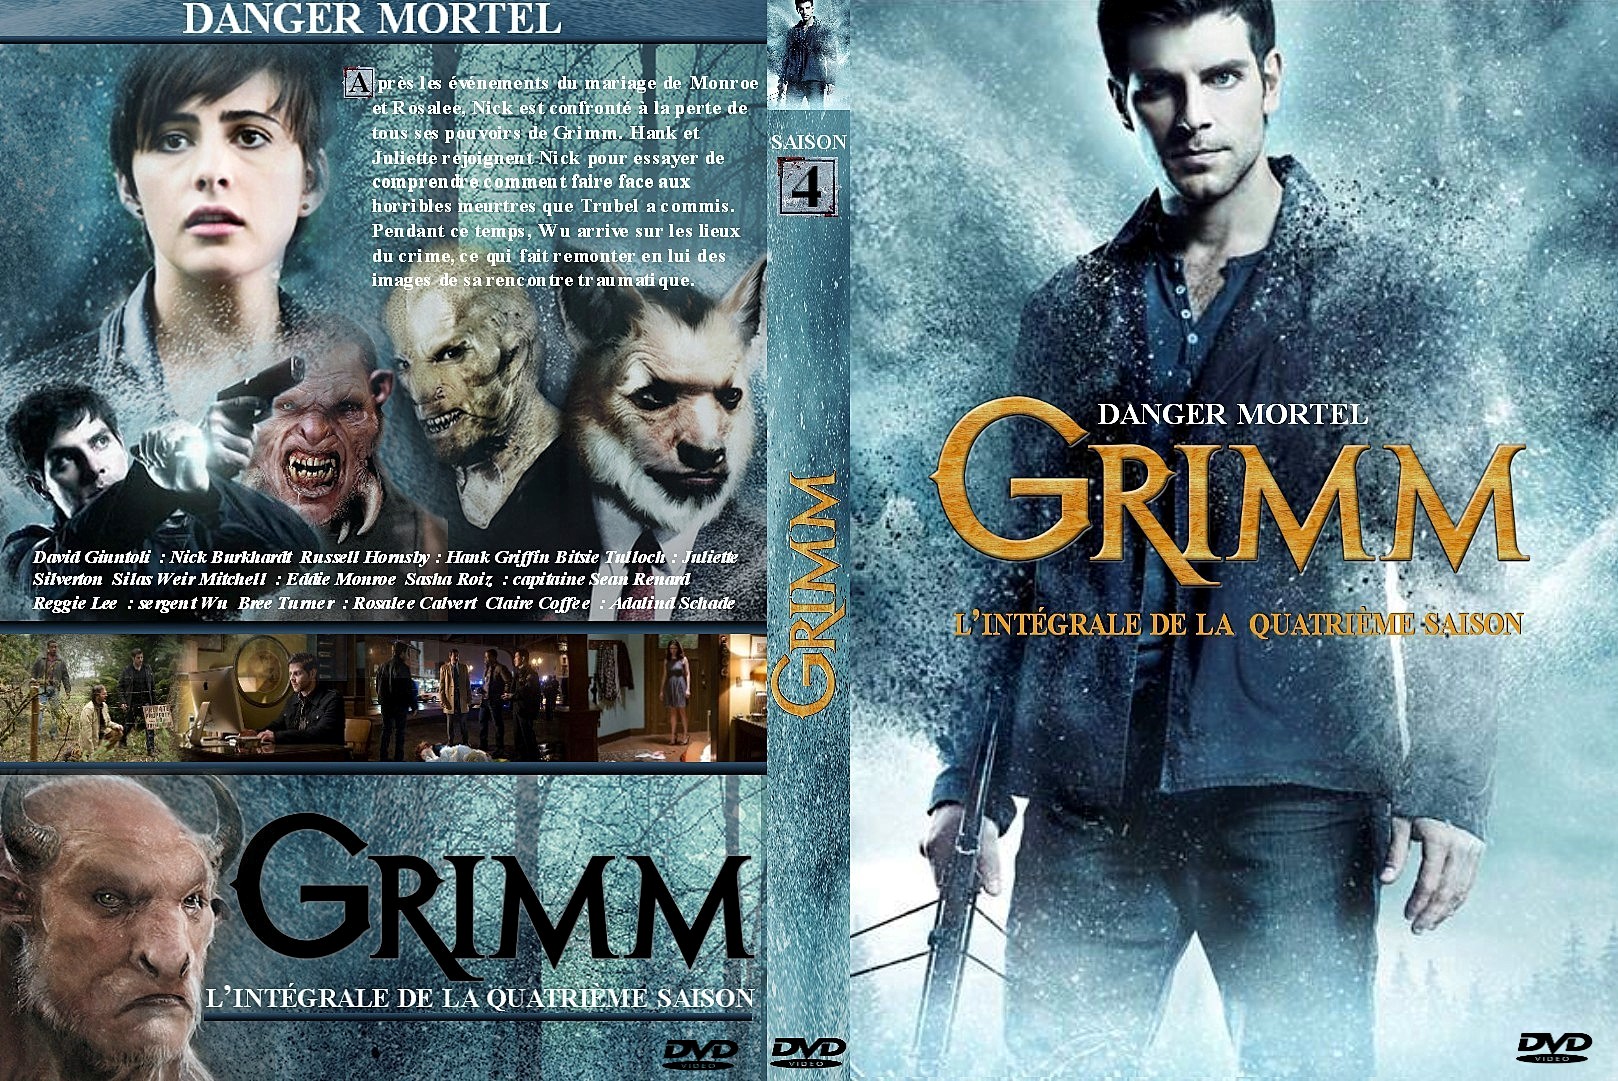 Jaquette DVD Grimm Saison 4 custom